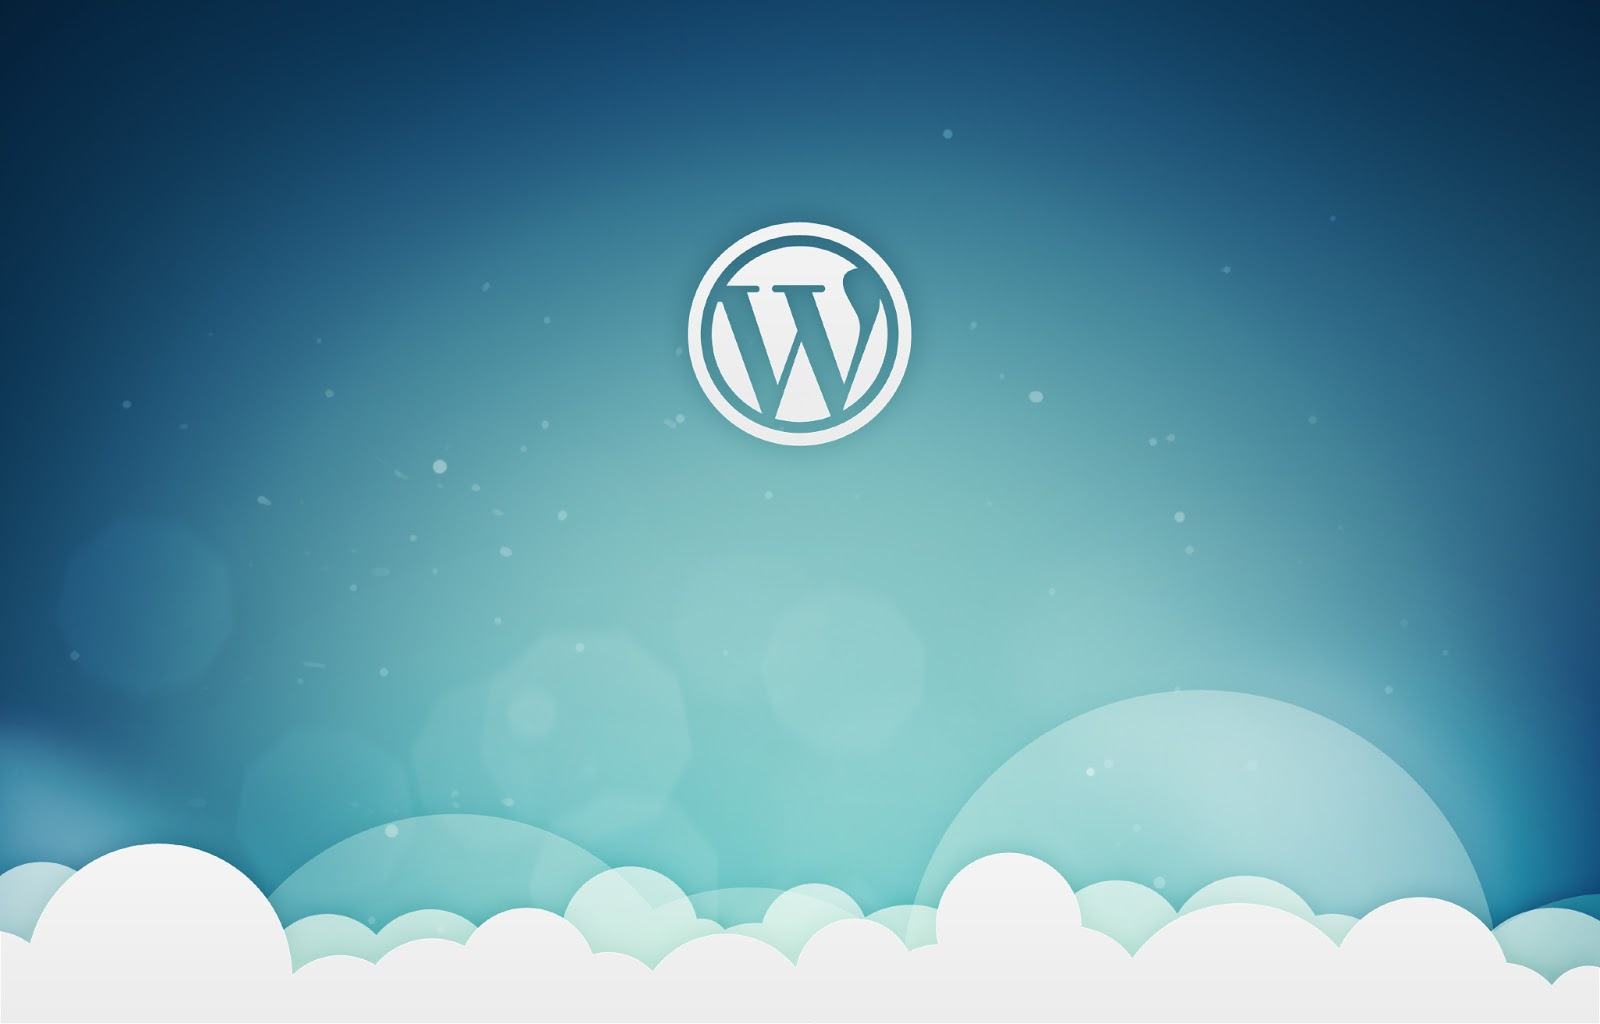 Creare pagine con WordPress app la guida per principianti 8